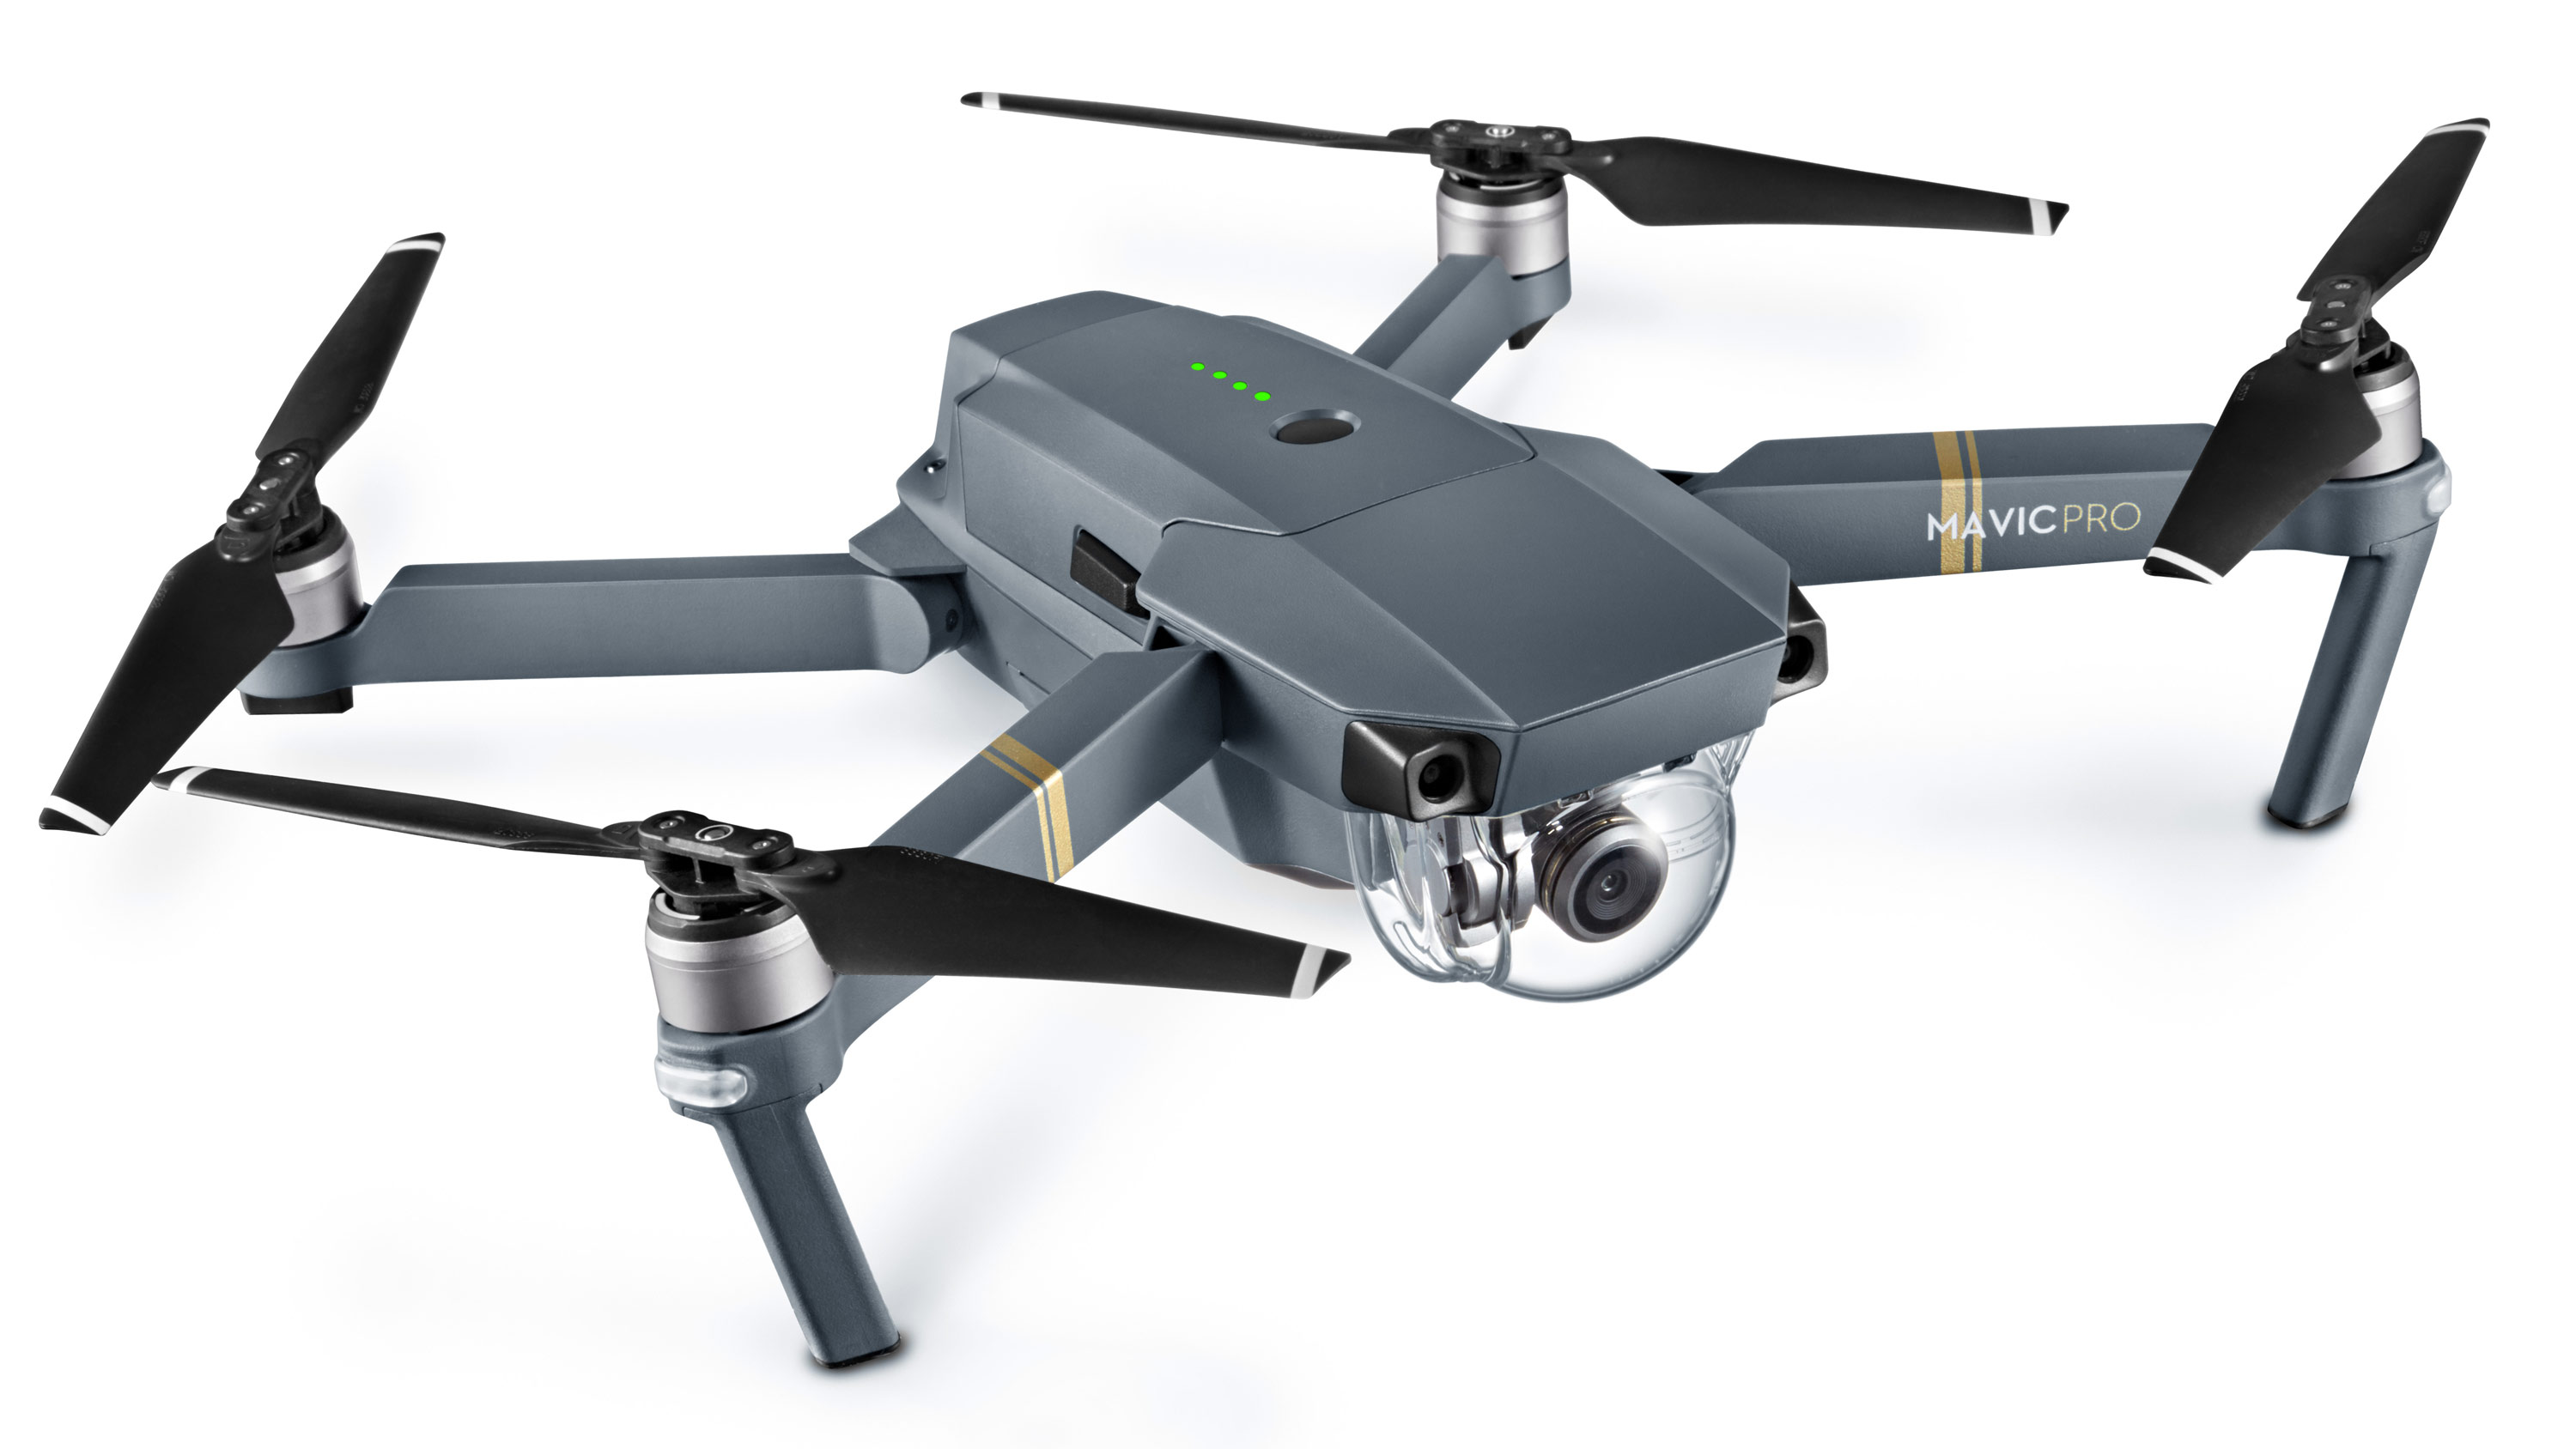 DJI anunciou modo de “voo offline” para seus drones após polêmica com exército